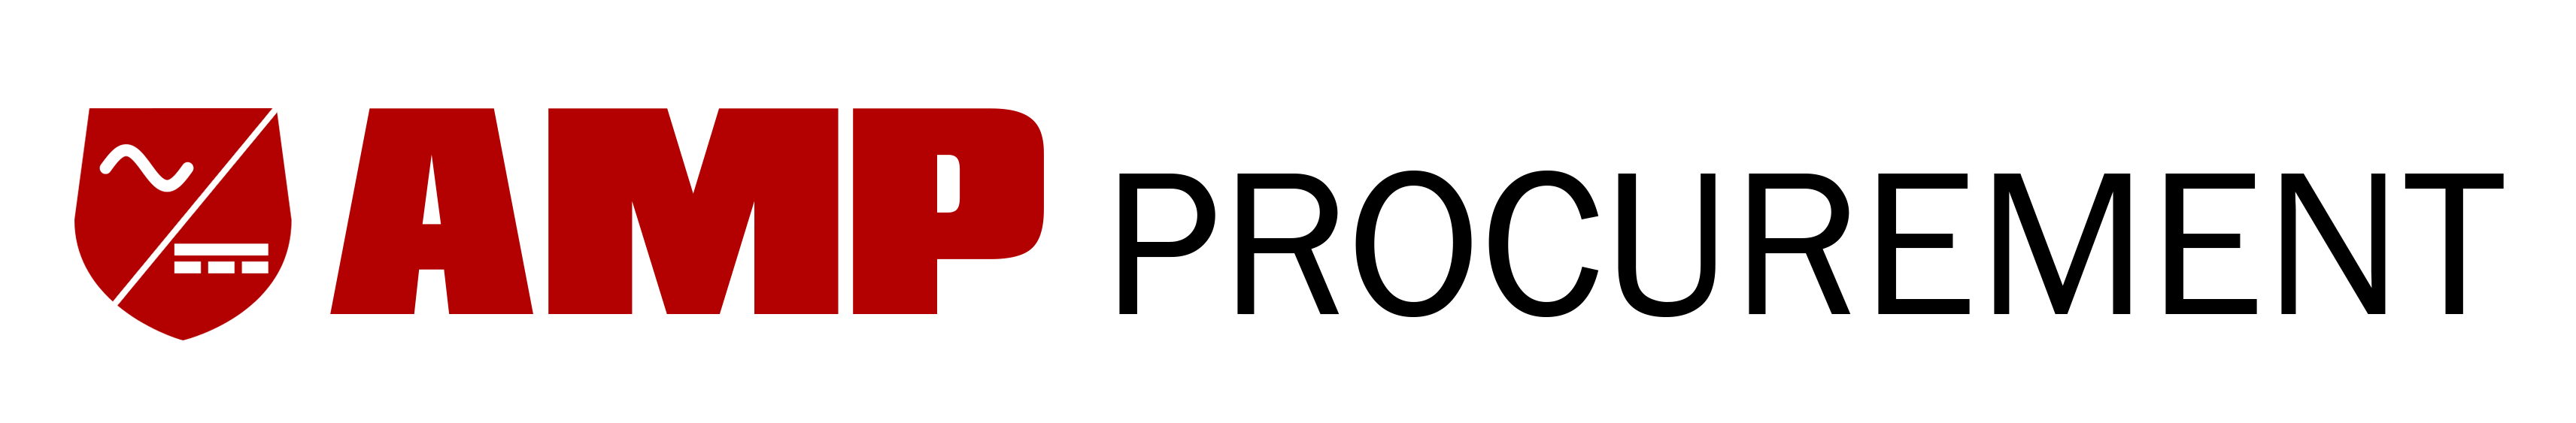 Former AMP Procurement logo